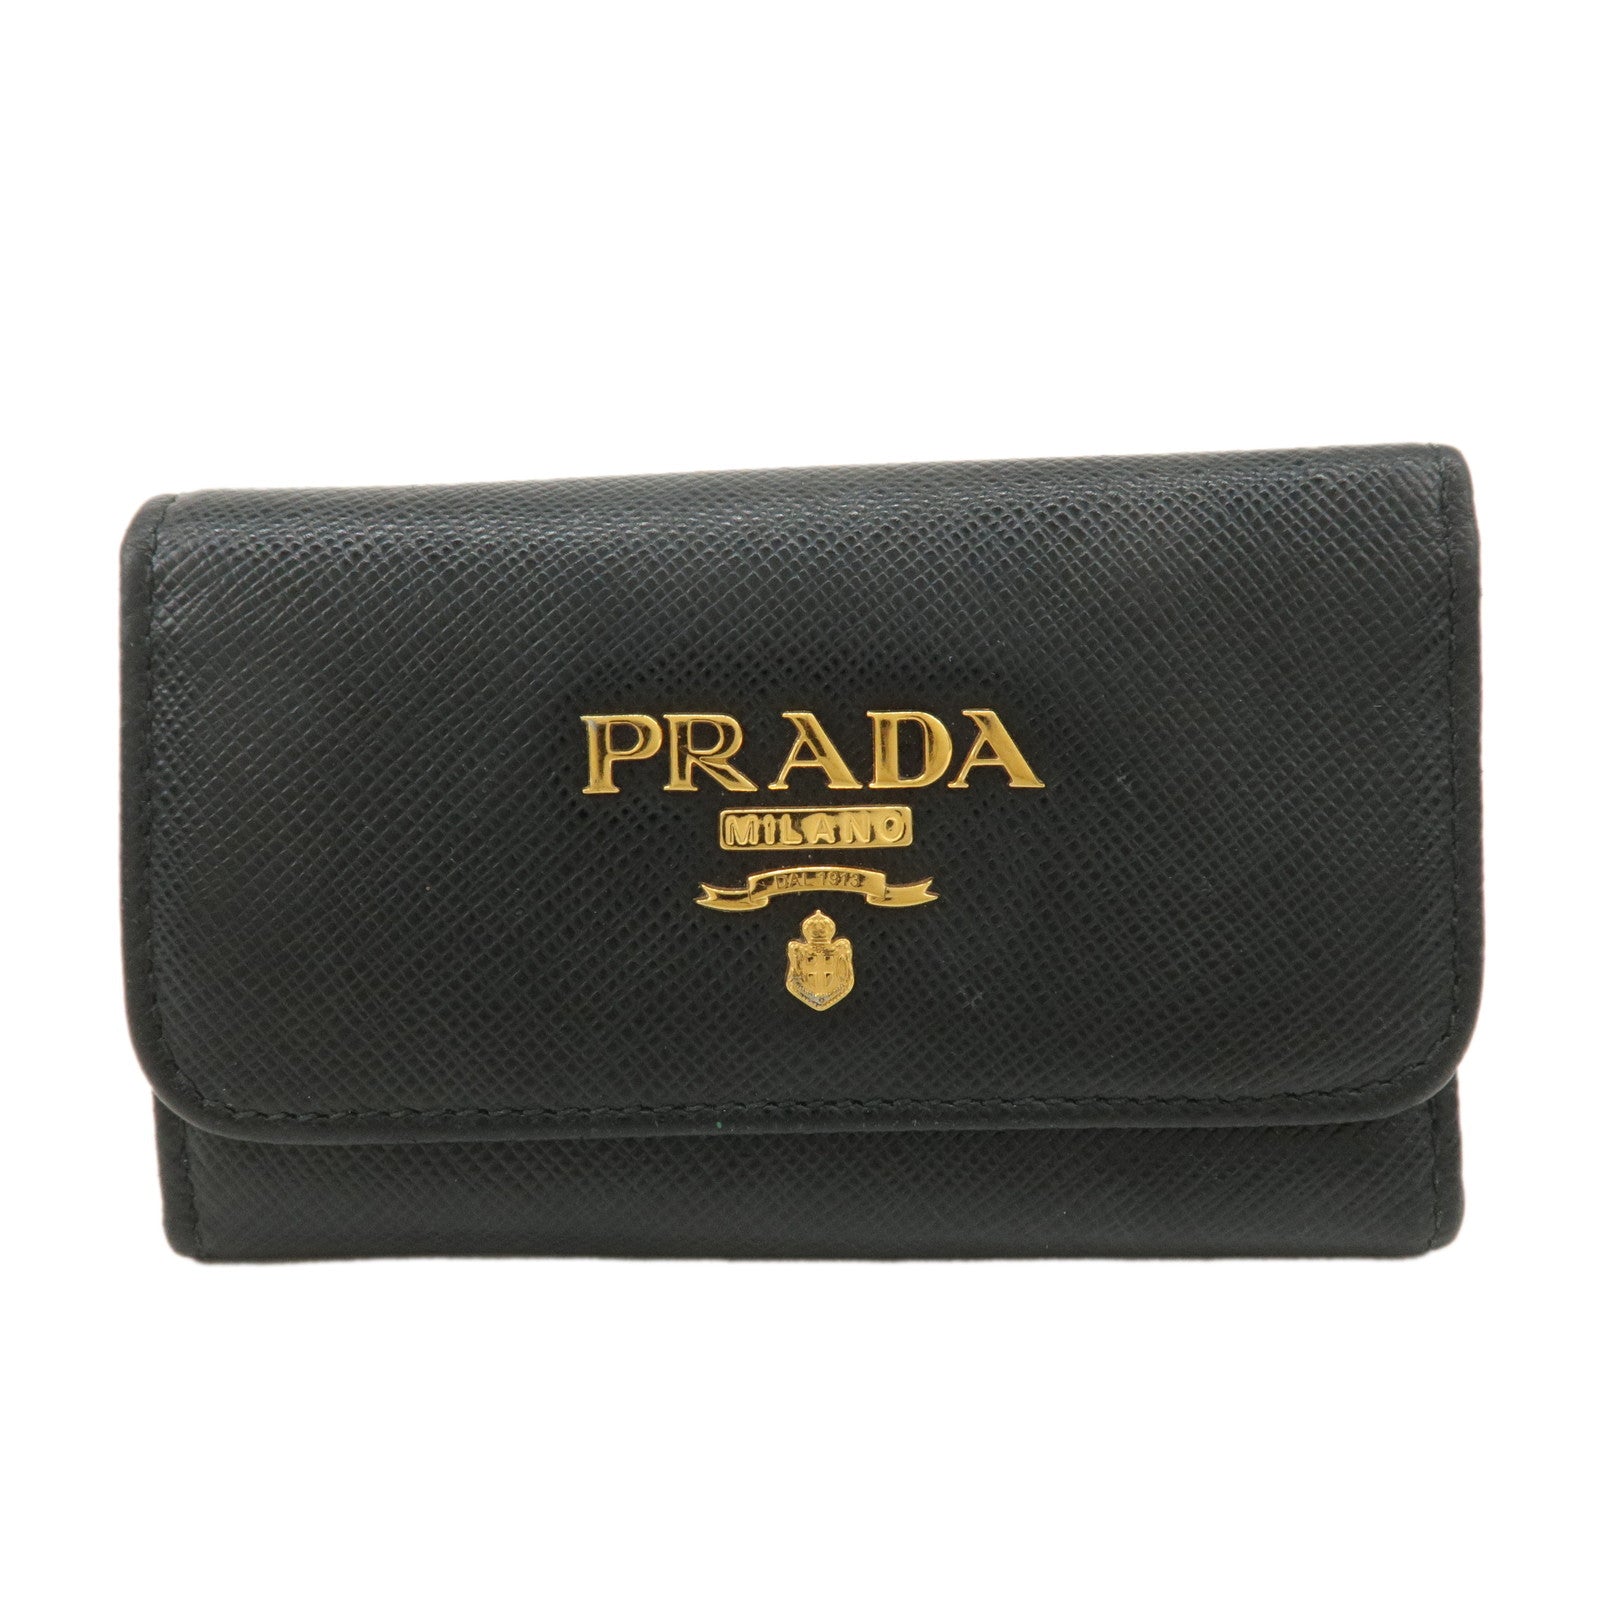 PRADA-Leather-6-KeyHook-Key-Case-Key-Holder-NERO-Black-1PG222